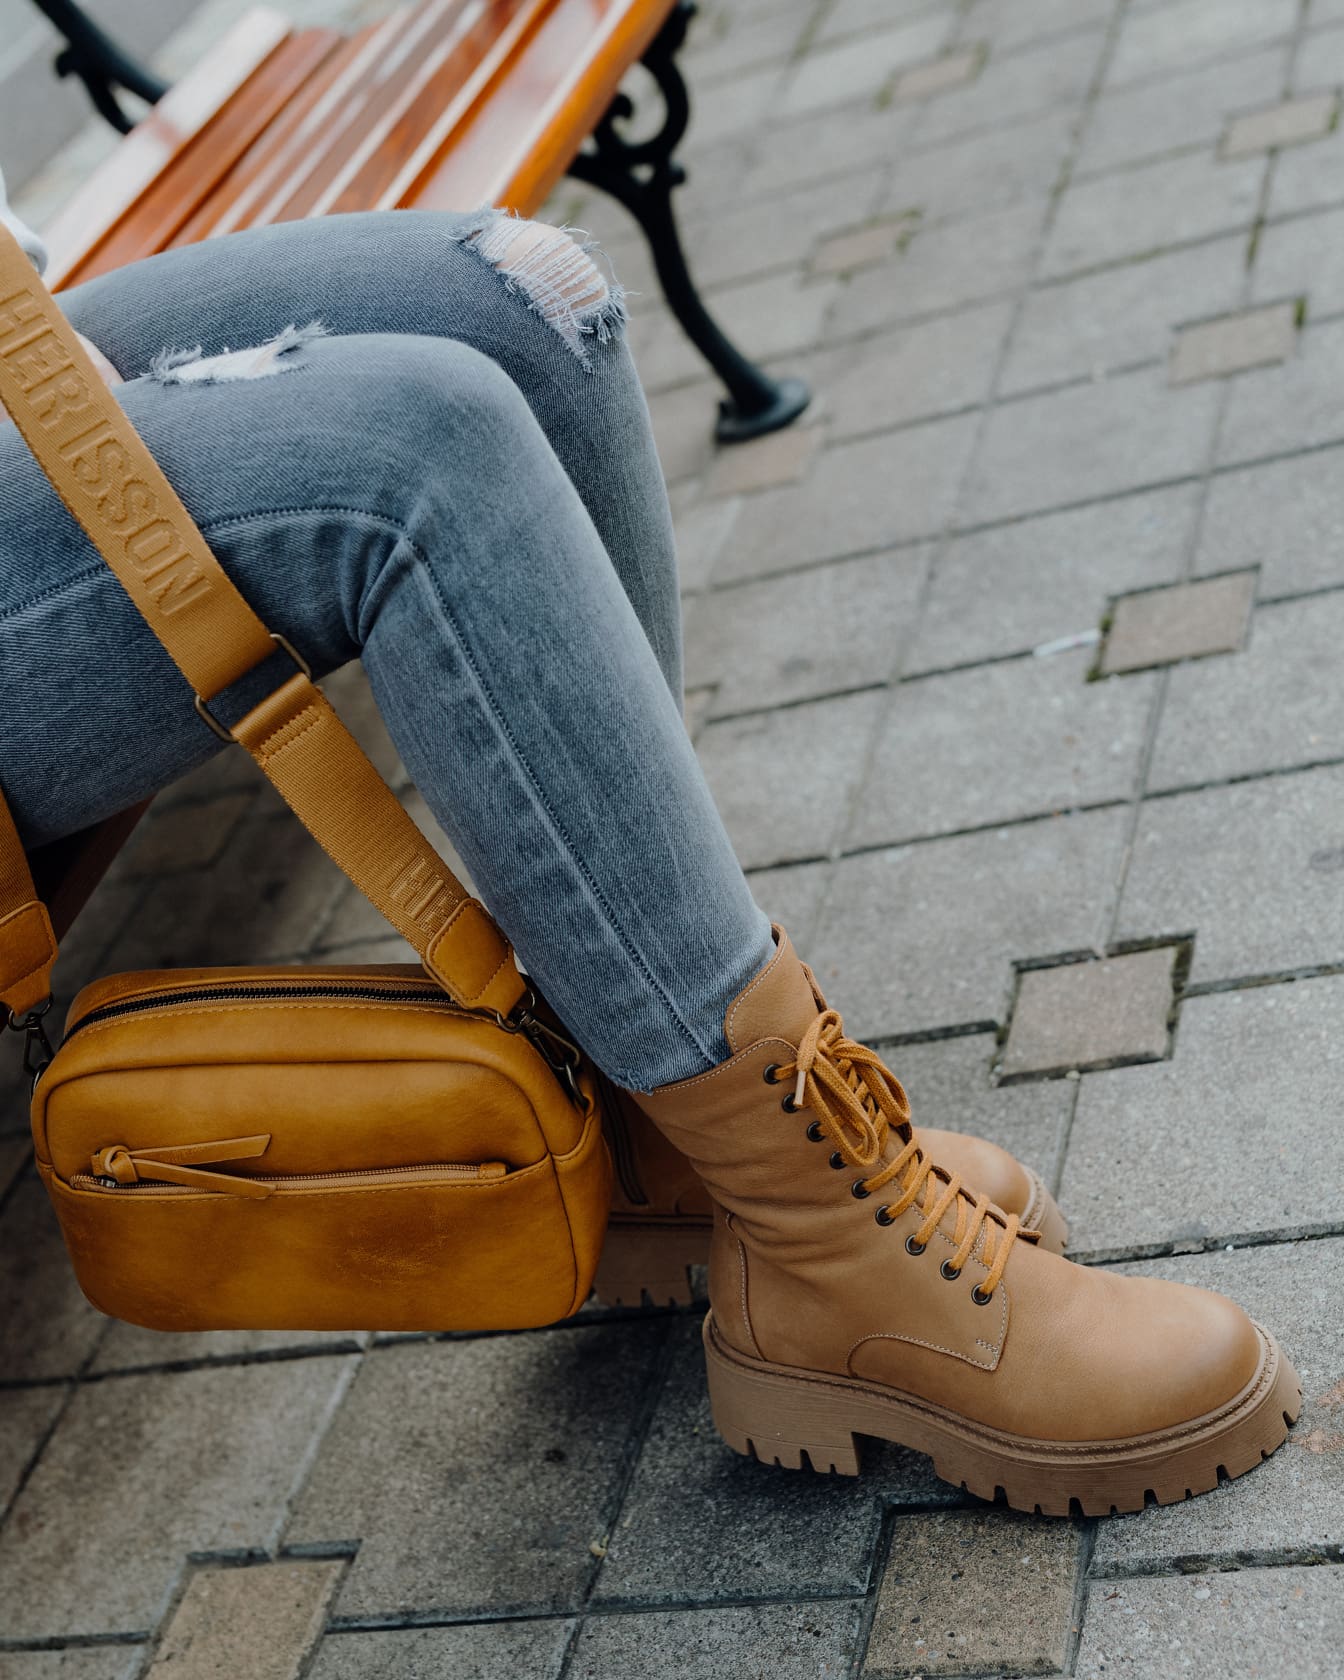 현대적으로 찢어진 청바지를 입고 노란 지갑과 부츠를 신고 벤치에 앉아 있는 사람